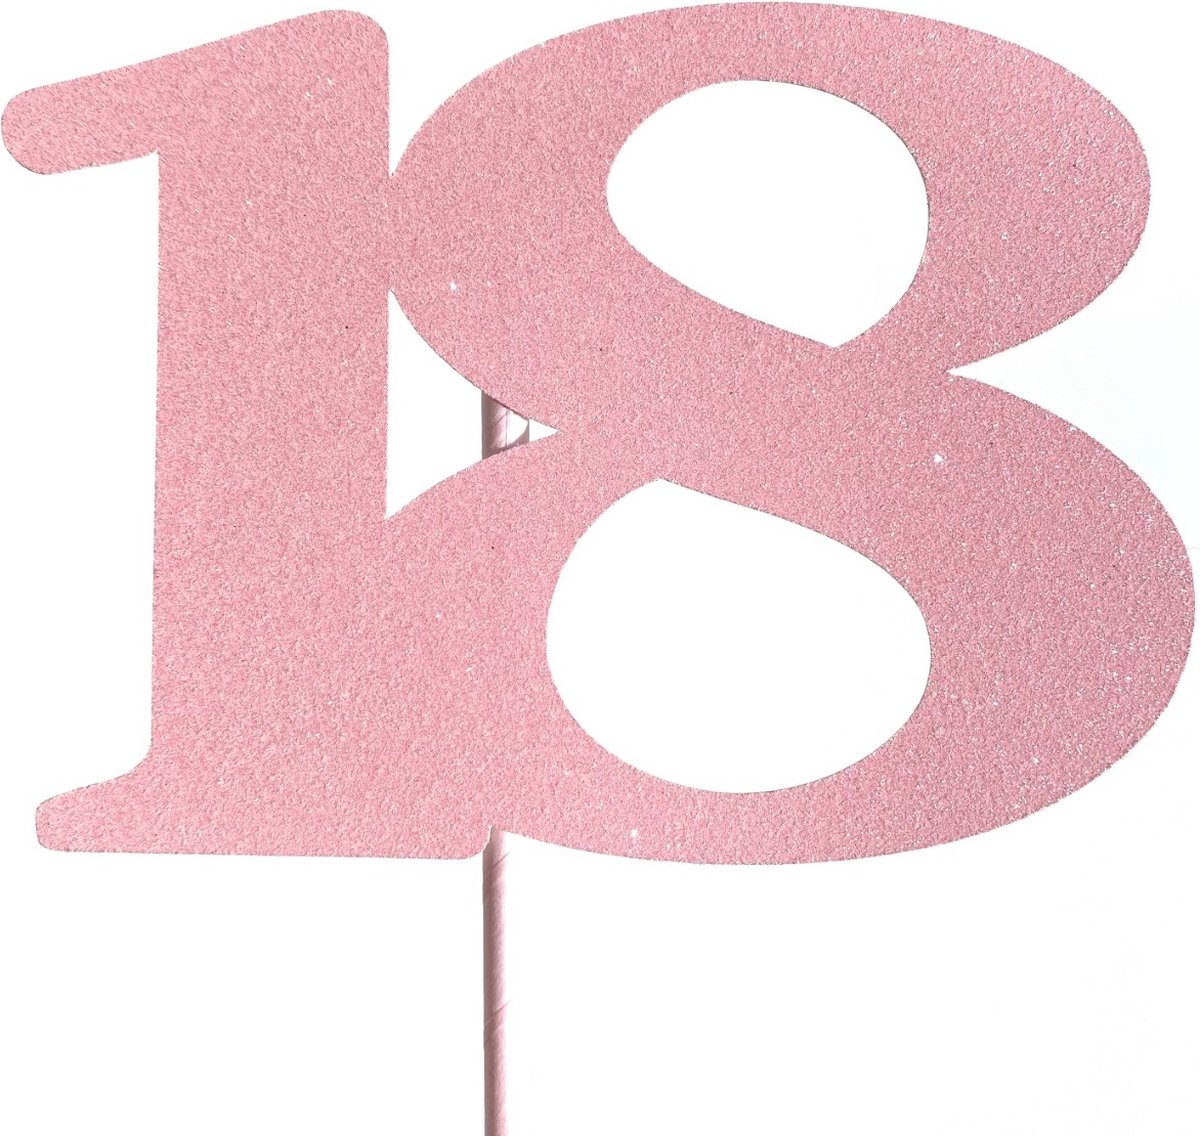 Taartdecoratie versiering| Taarttopper| Cake topper | Taartversiering| Verjaardag| Cijfers | 18 | Roze glitter|14 cm| karton